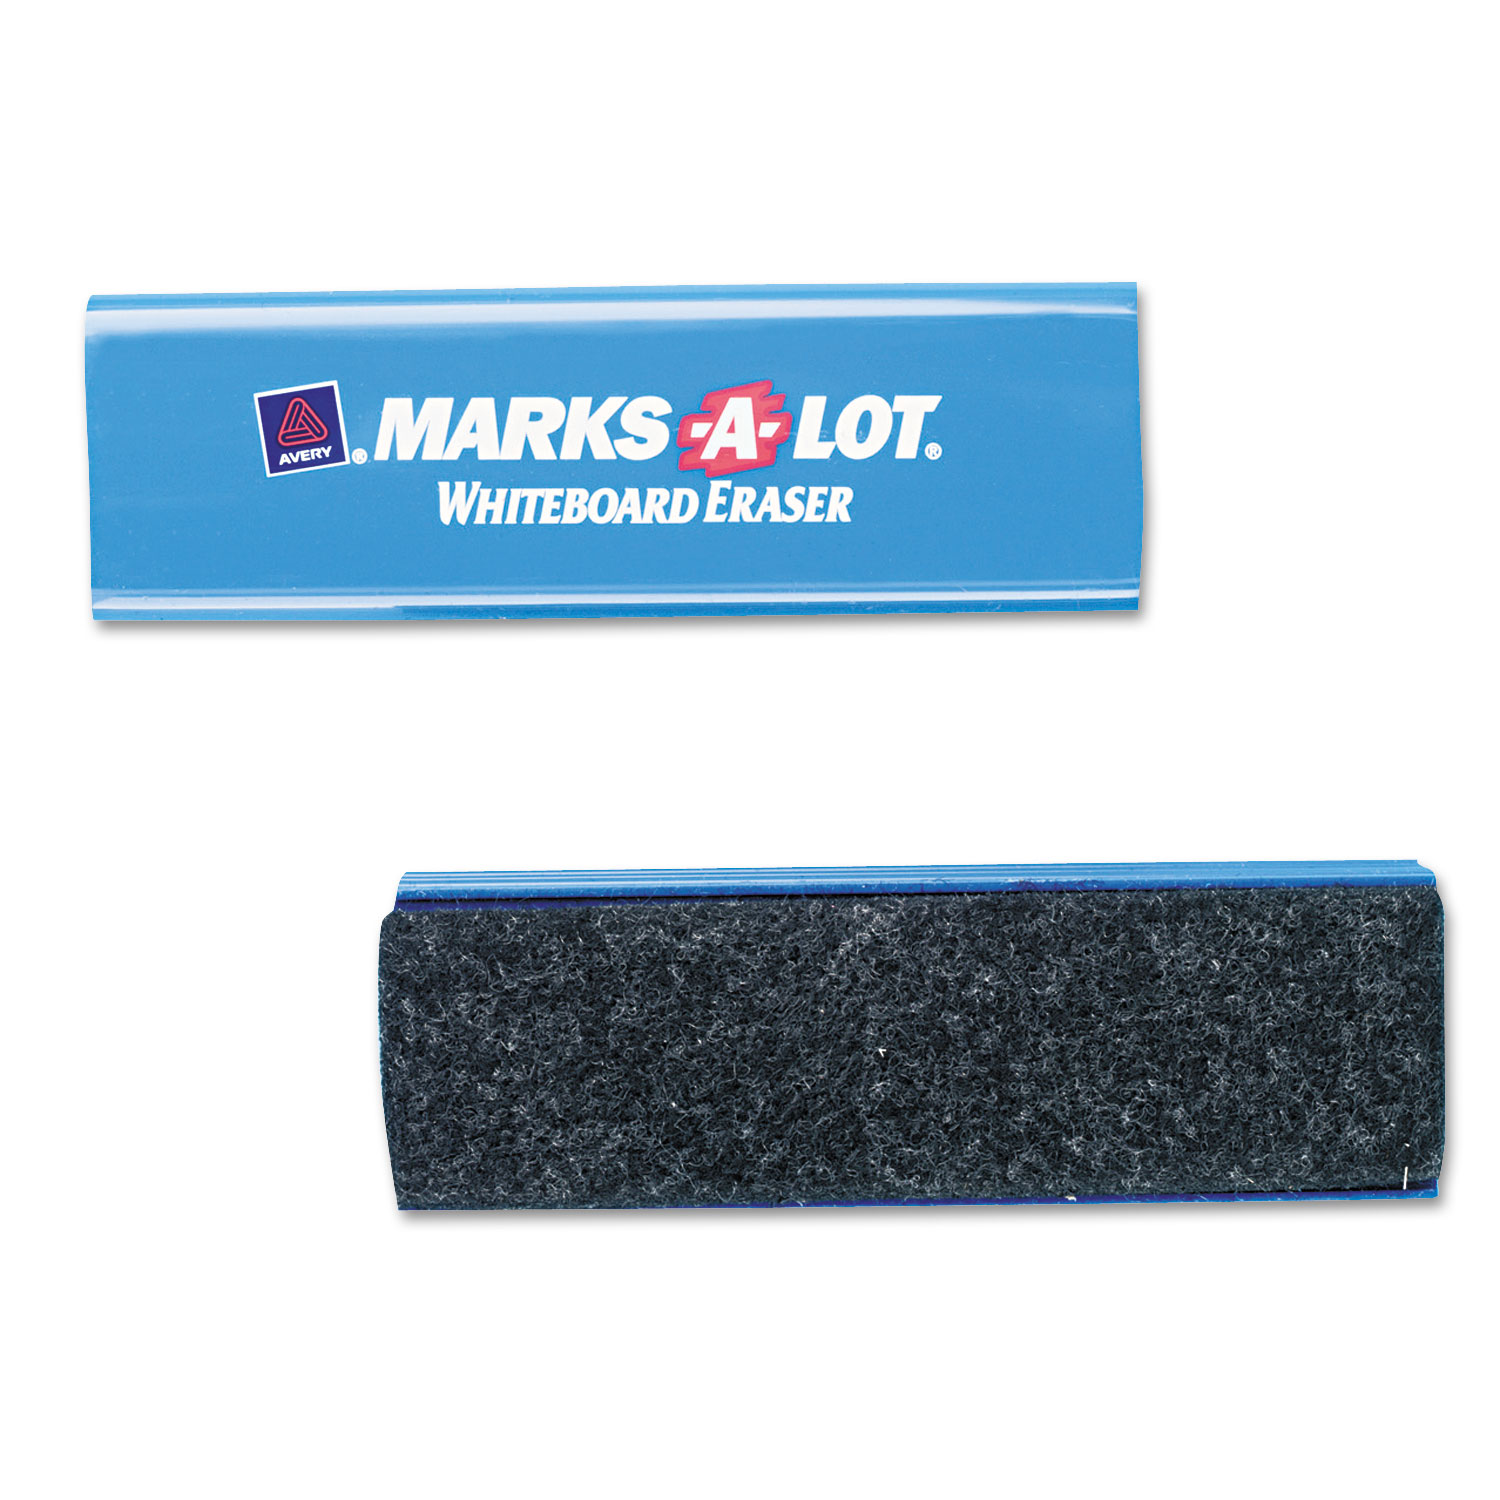 Marks-A-Lot Dry Erase Eraser Felt 6 1/4w x 1 7/8d x 1 1/4h 29812 - image 1 of 2